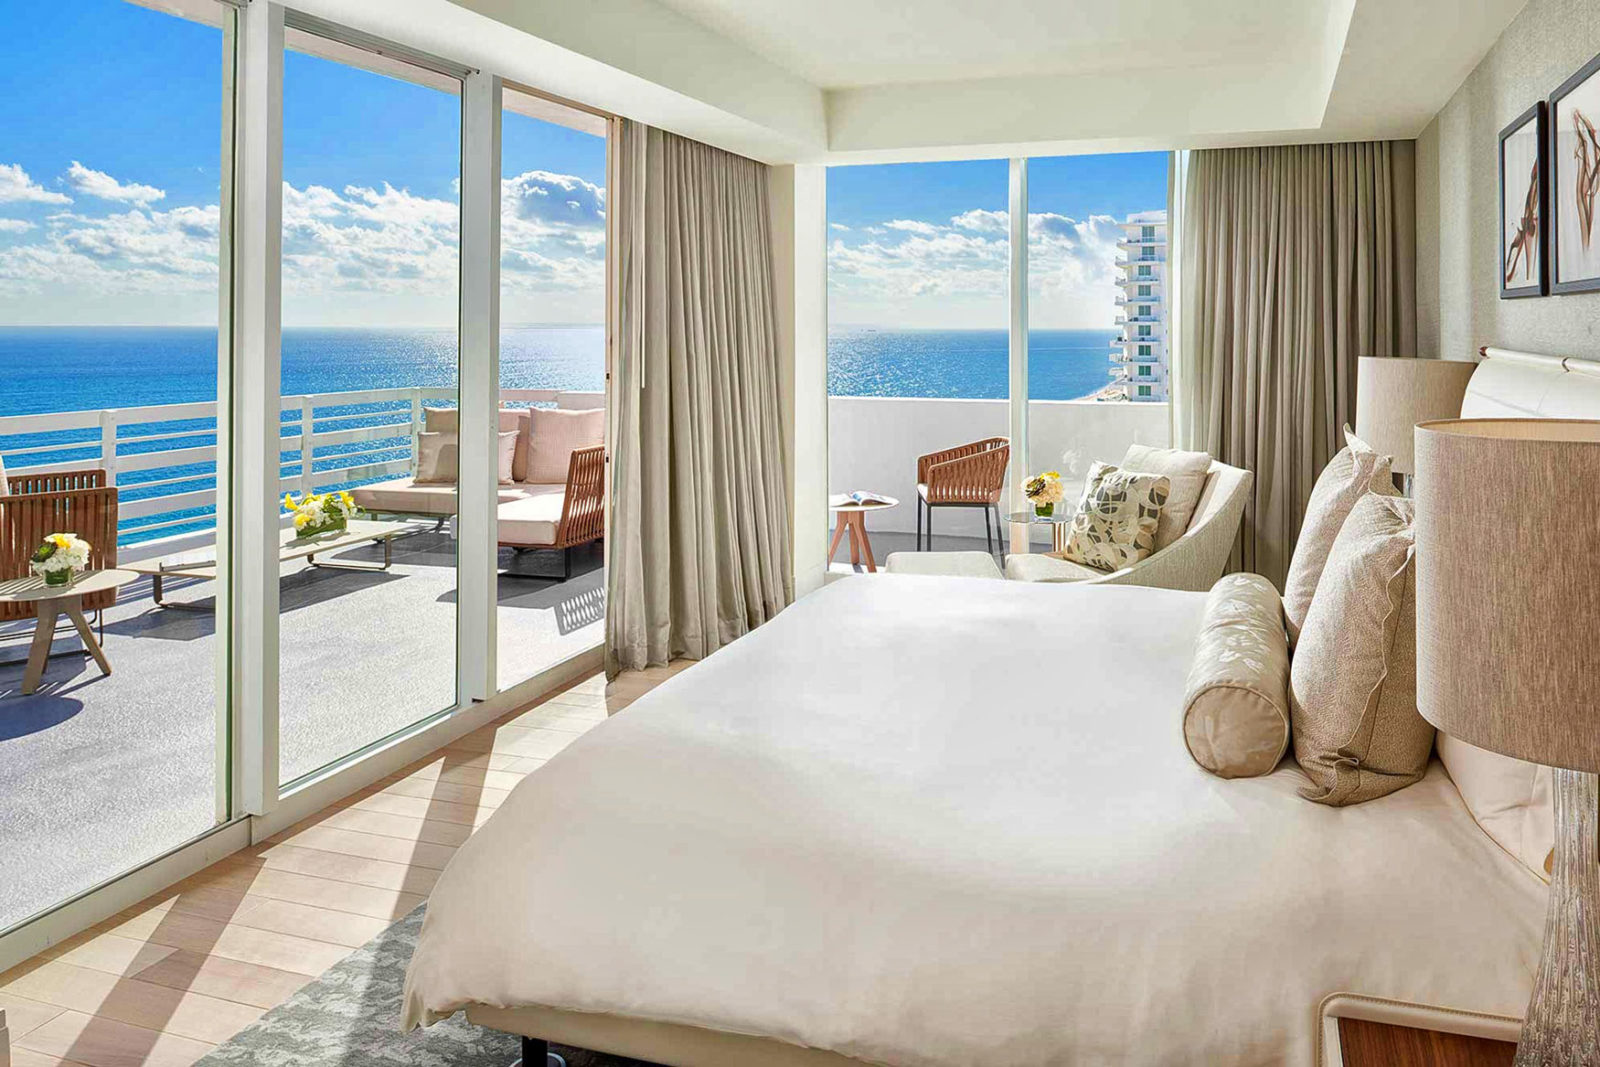 Een kamer met zeezicht in het beroemde Fontainebleau resort in Miami Beach